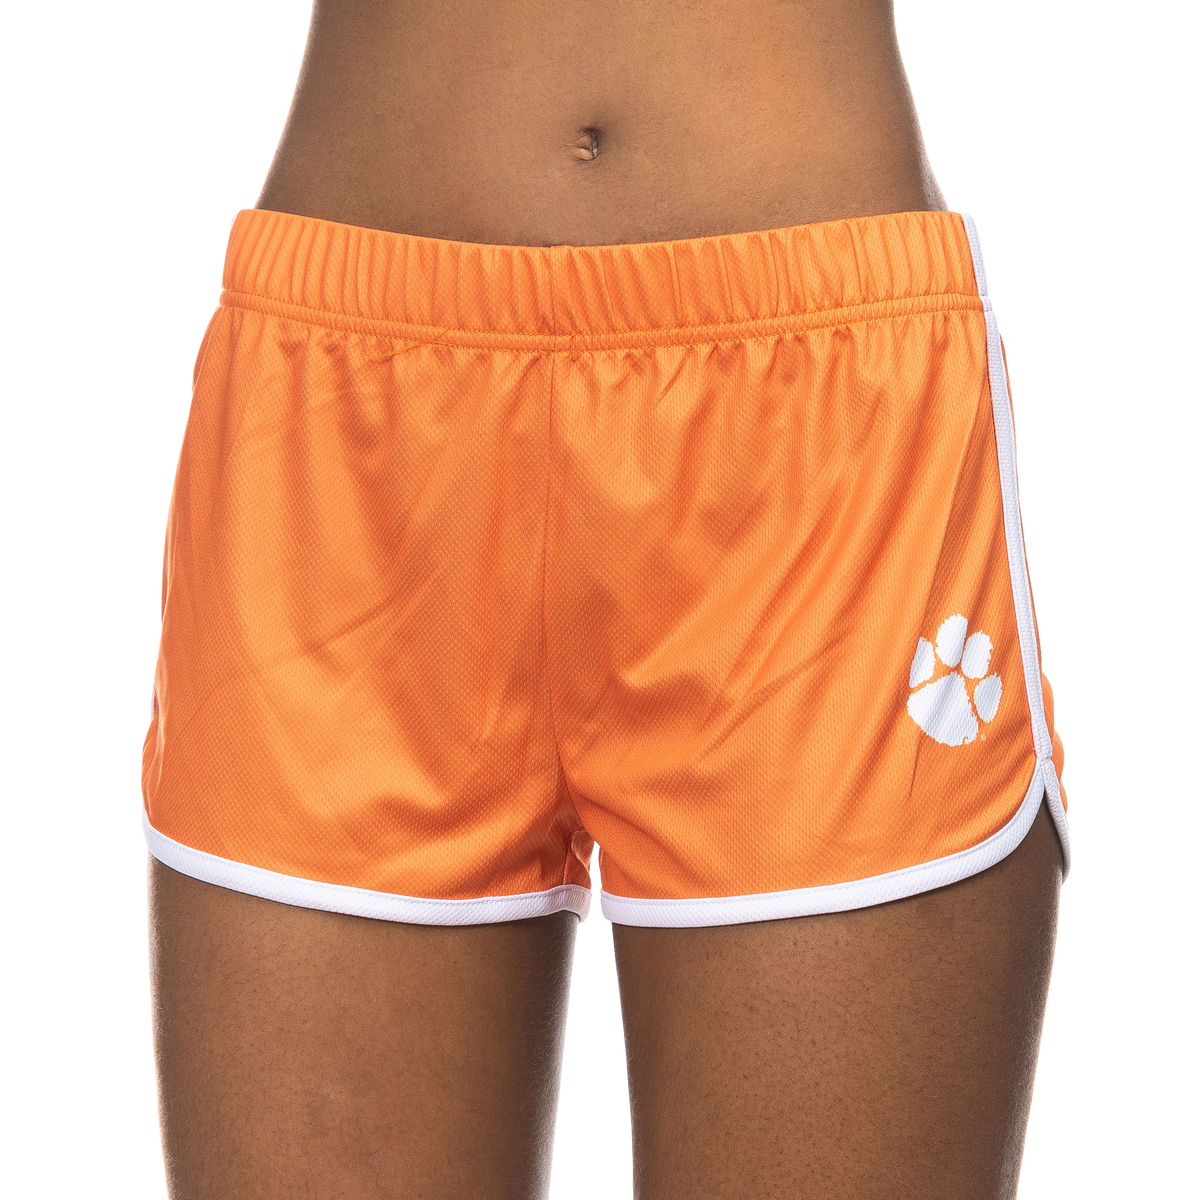 Clemson Orange Shorts with White Paw